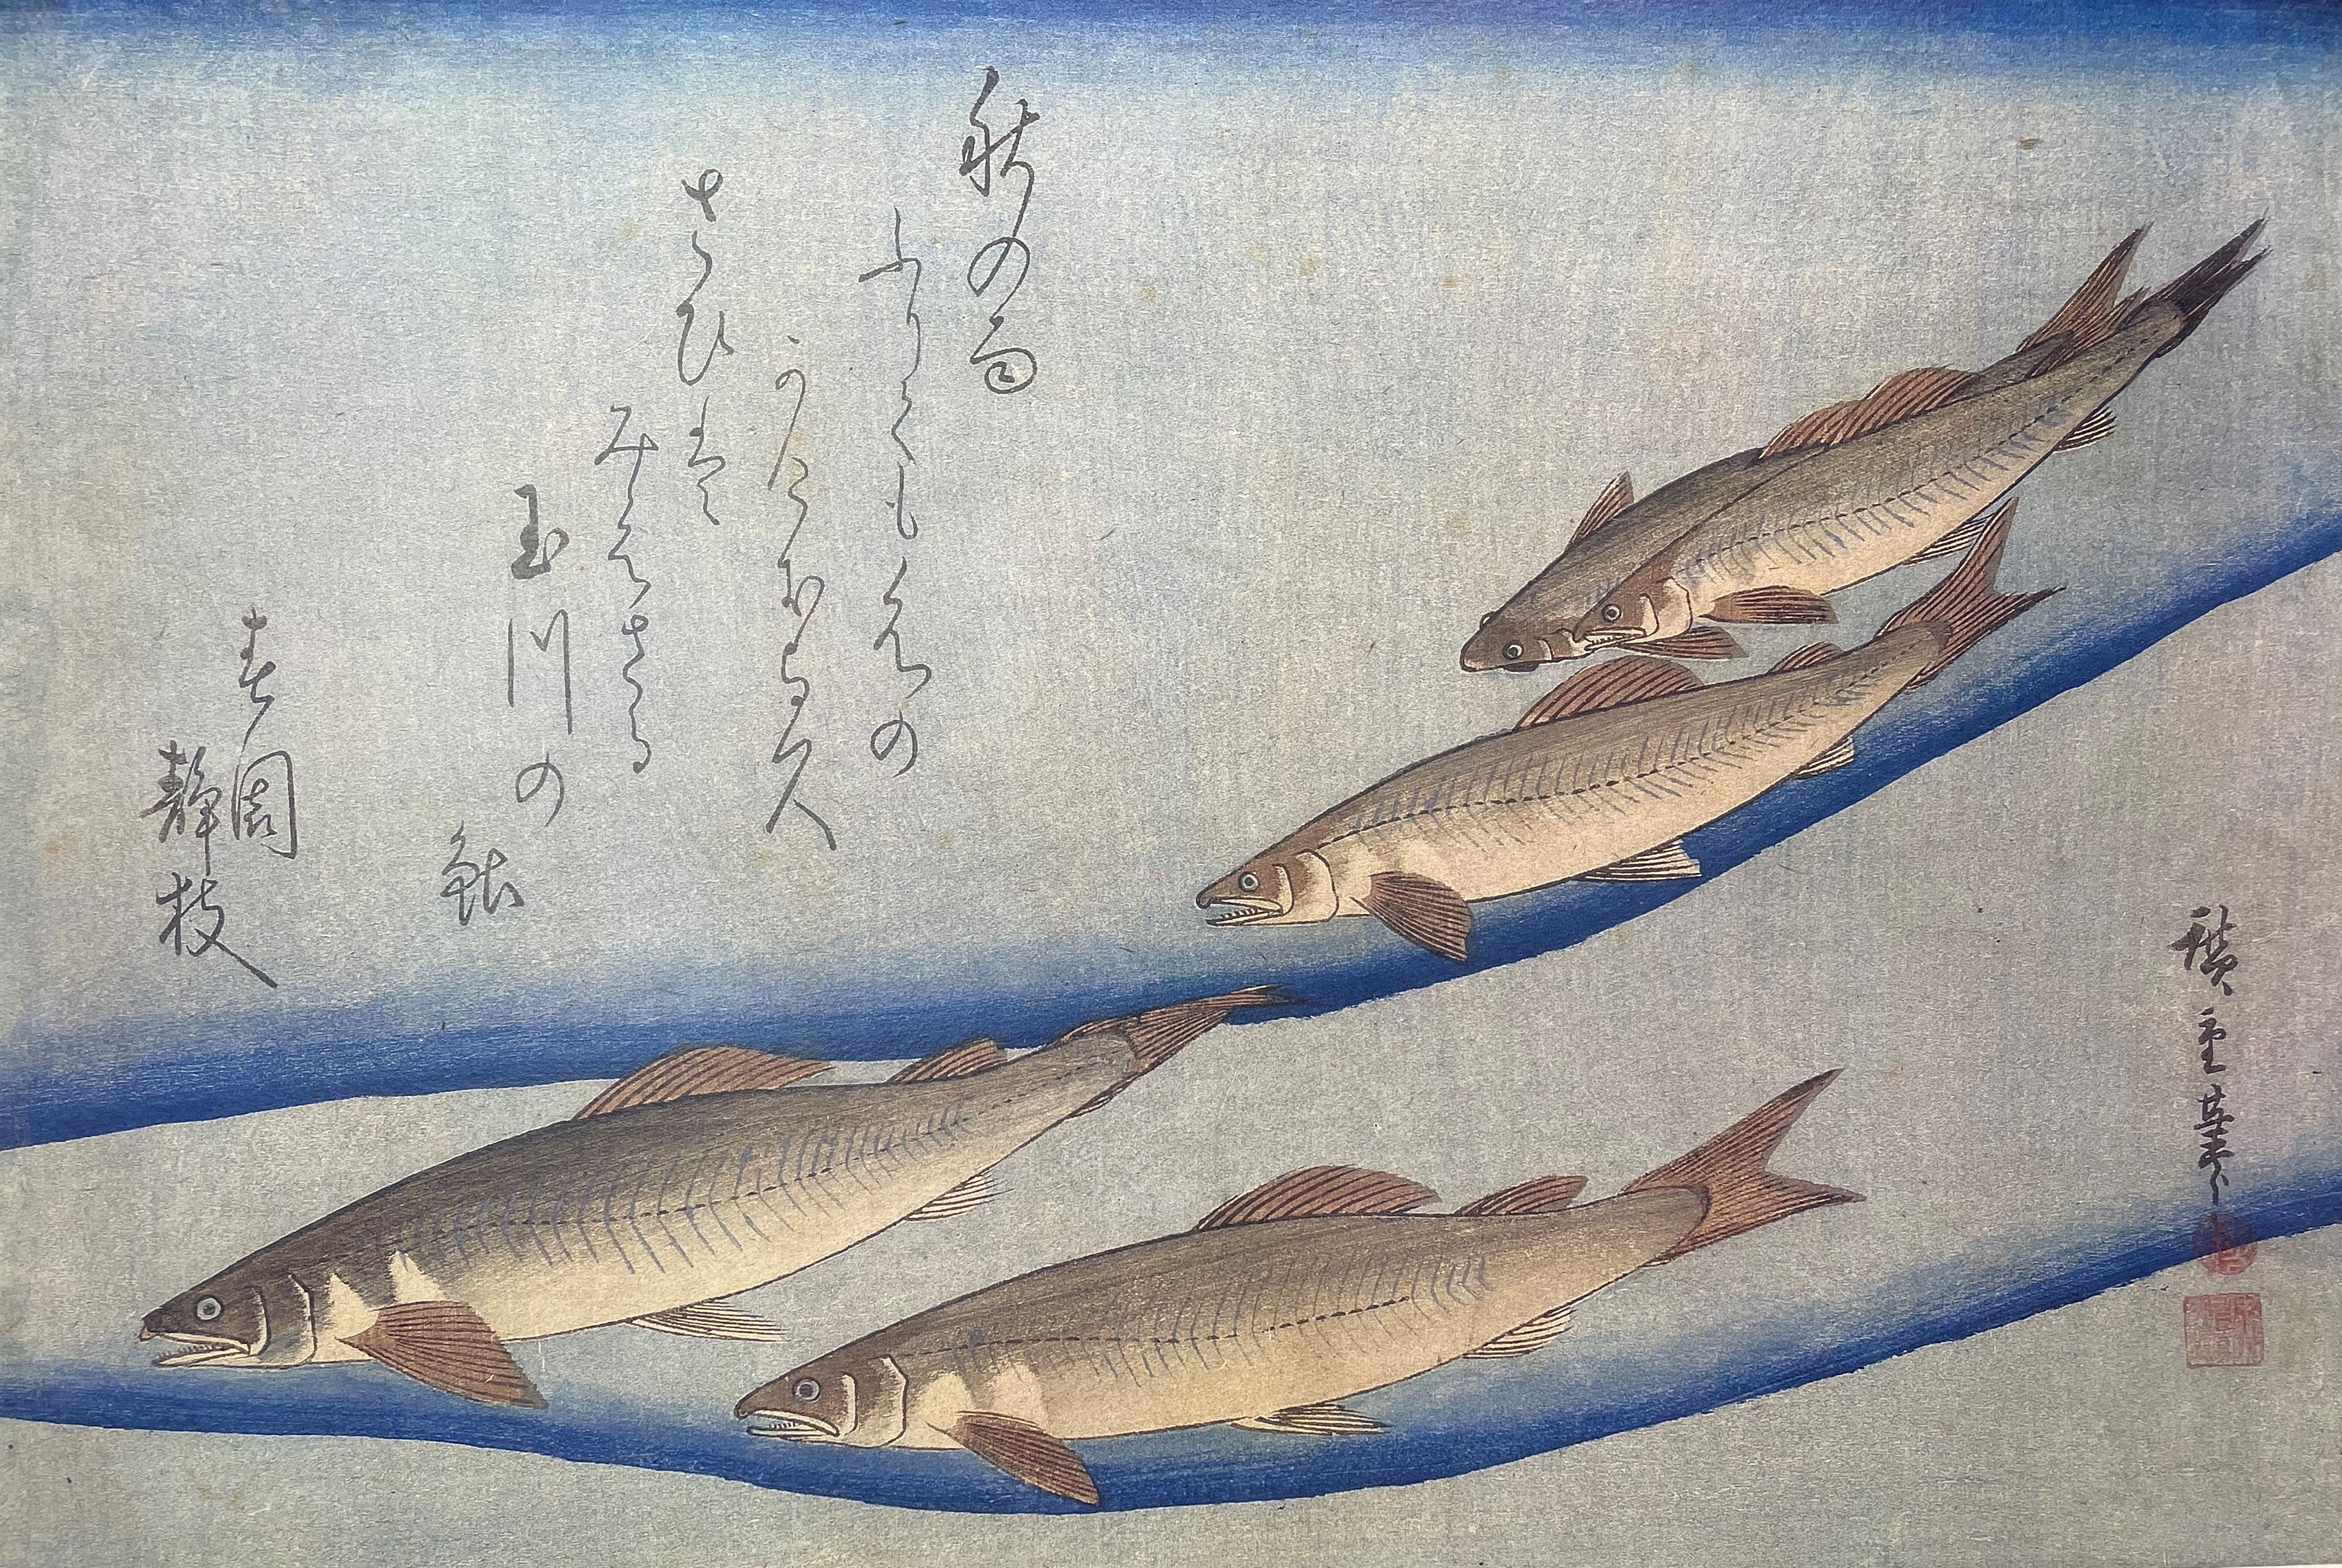 Sweet Fish in Tama River (Machine Print)